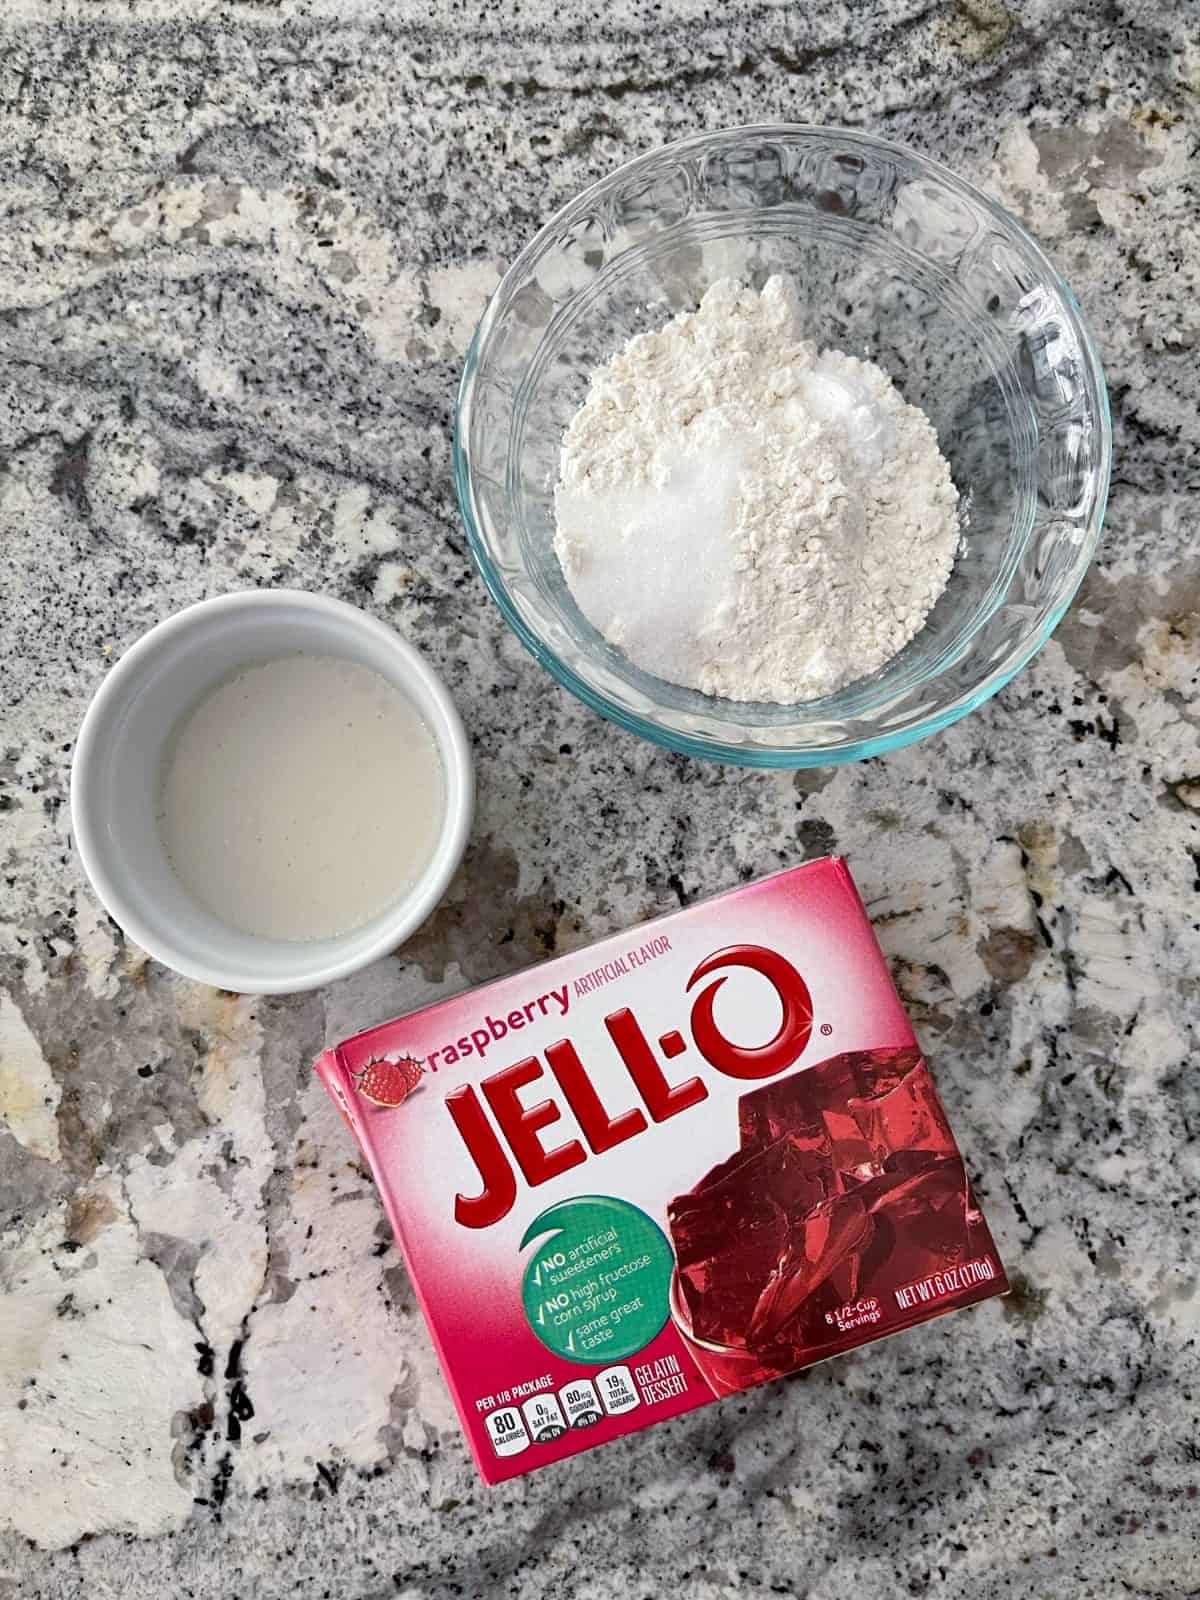 Συστατικά που περιλαμβάνουν γάλα αμυγδάλου χωρίς ζάχαρη, αλεύρι για όλες τις χρήσεις, γλυκαντικό Swerve και συσκευασία Jell-o βατόμουρου.